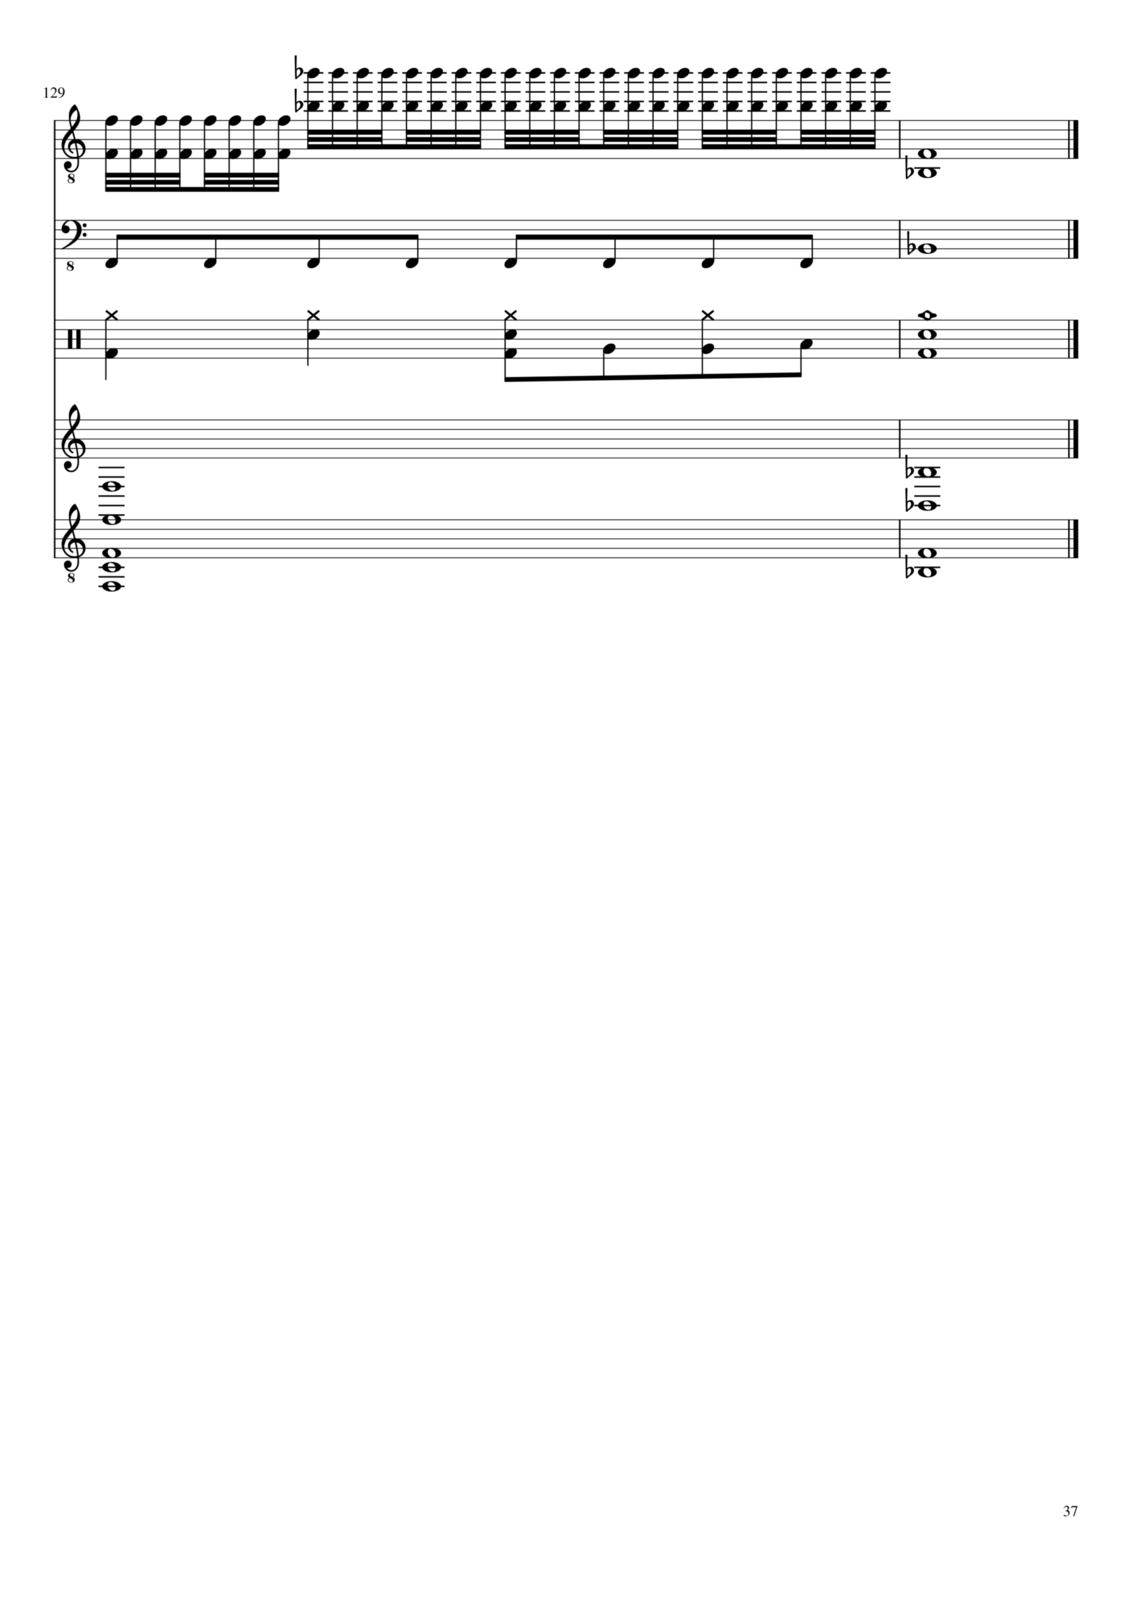 Vechnaya prizrachnaya vstrechnaya slide, Image 37